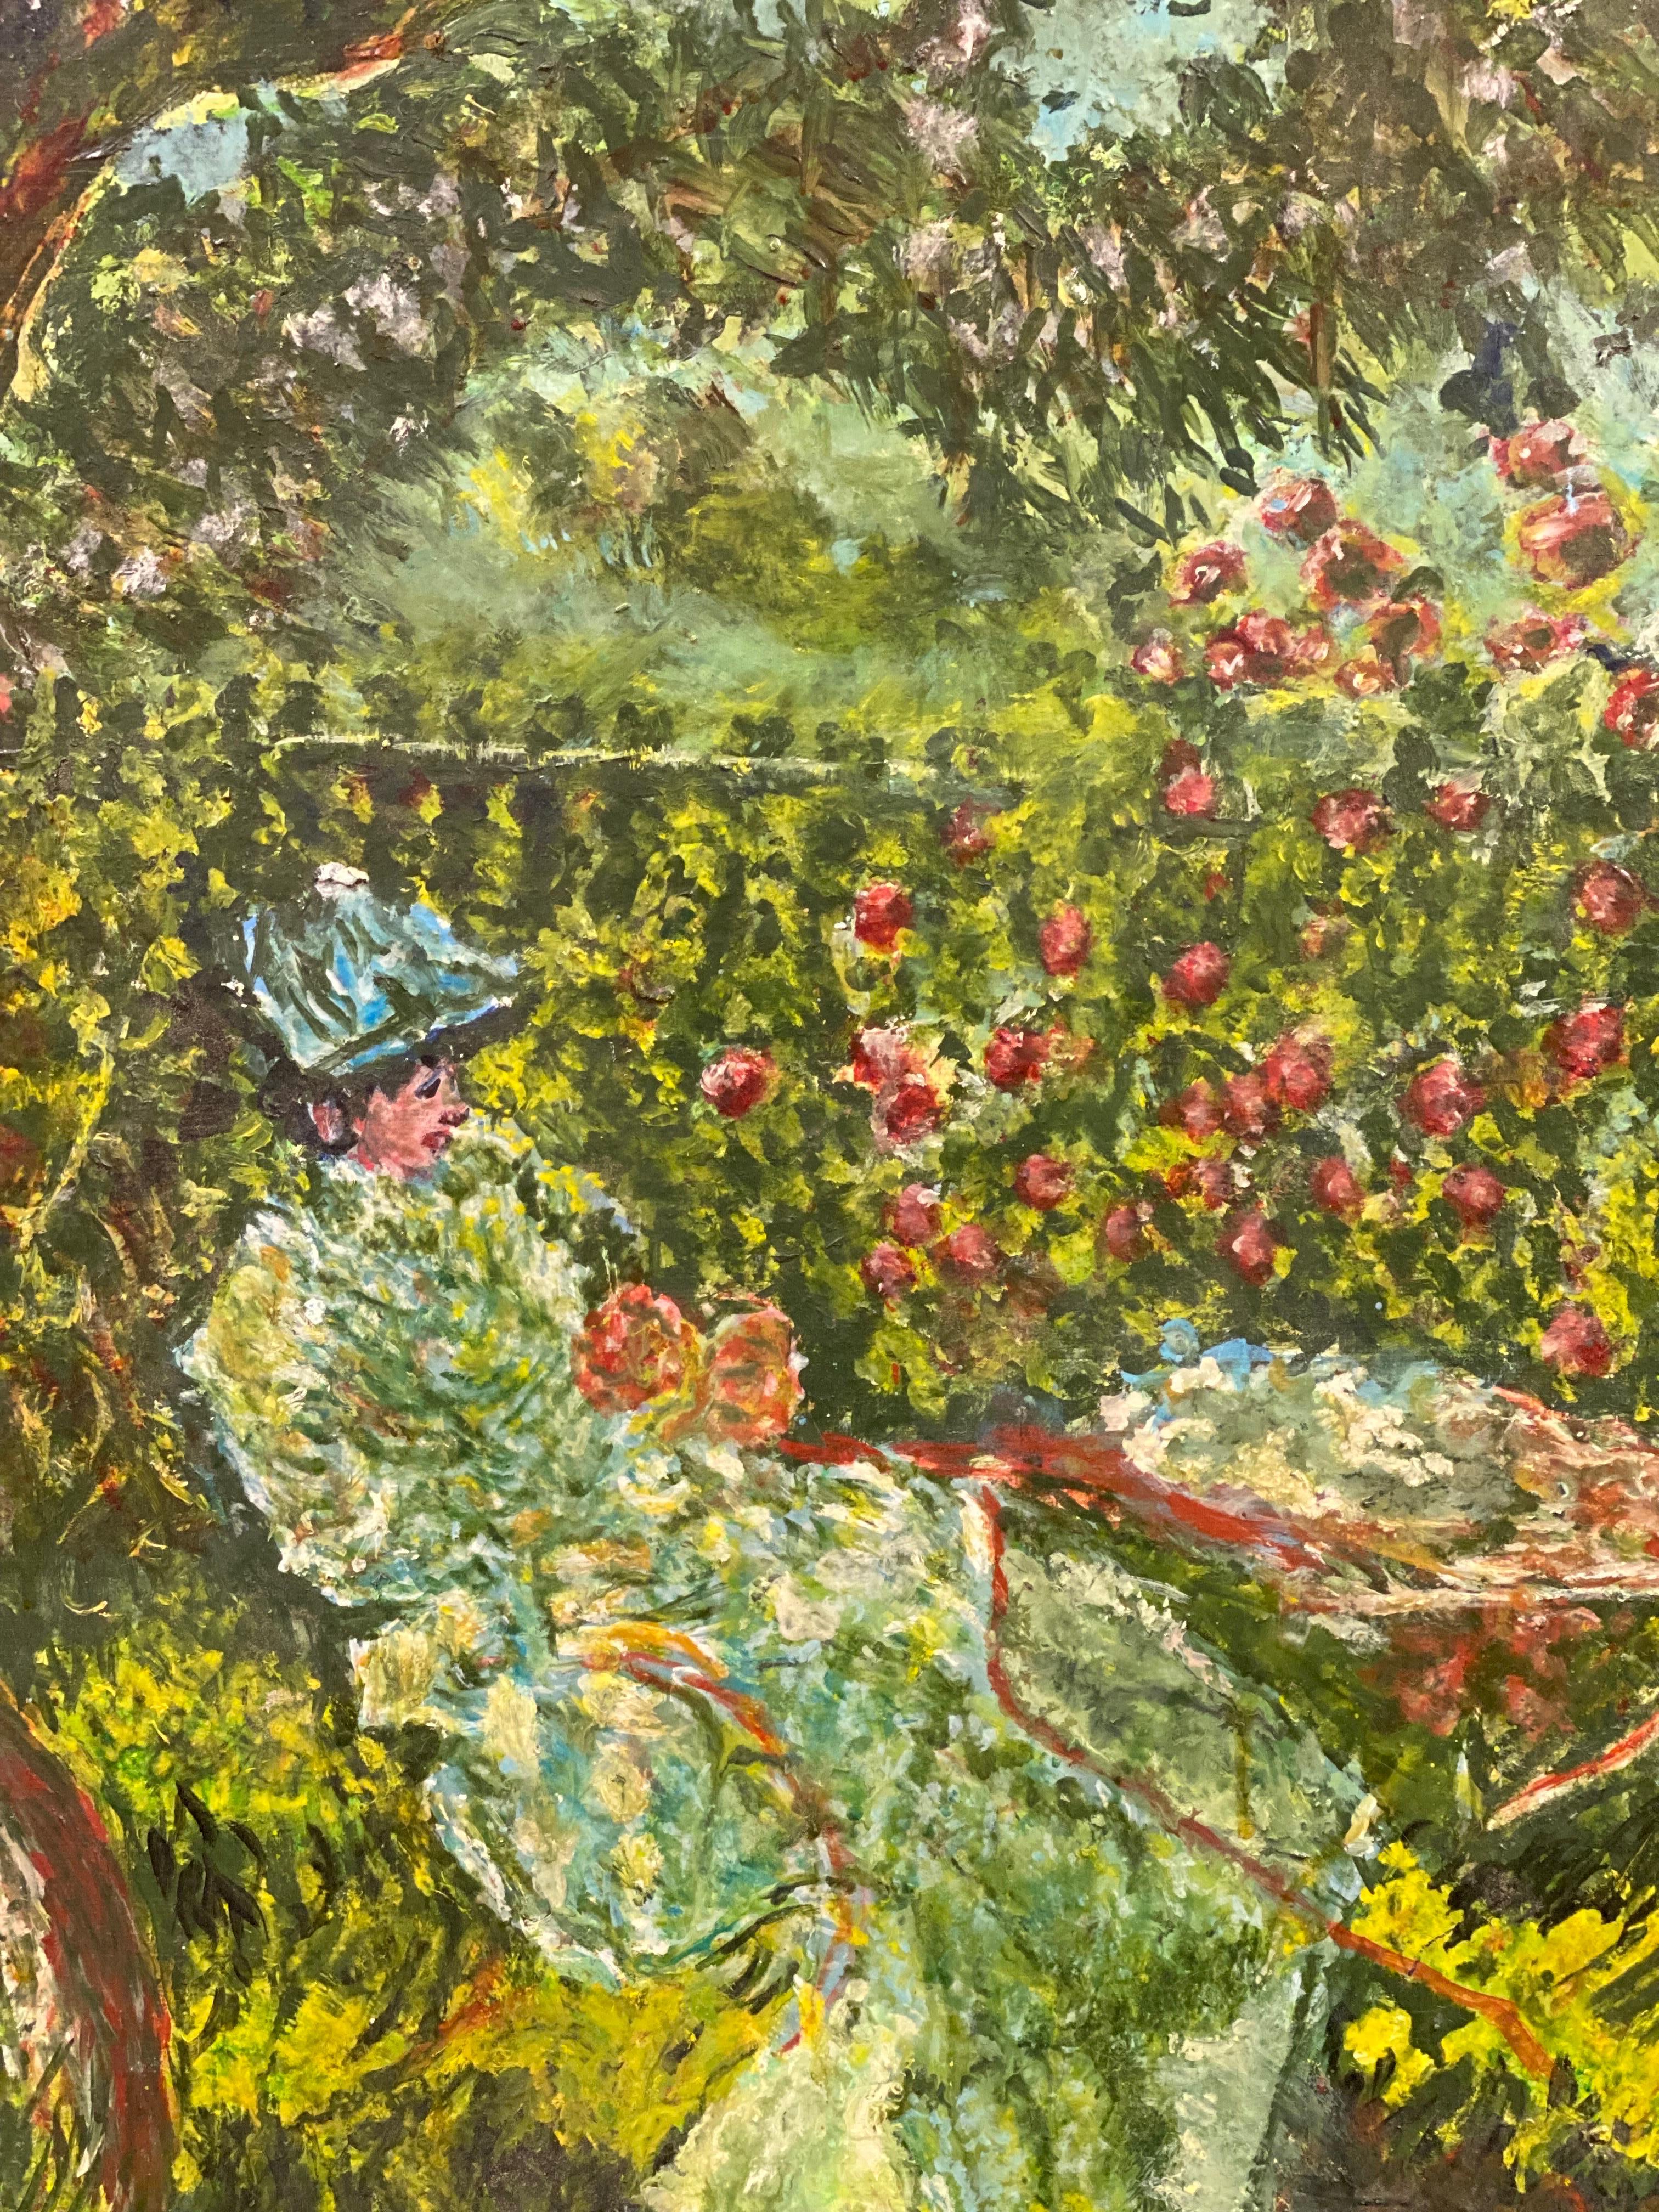 Magnifique dame impressionniste française lisant dans un jardin de fleurs - Painting de French Impressionist